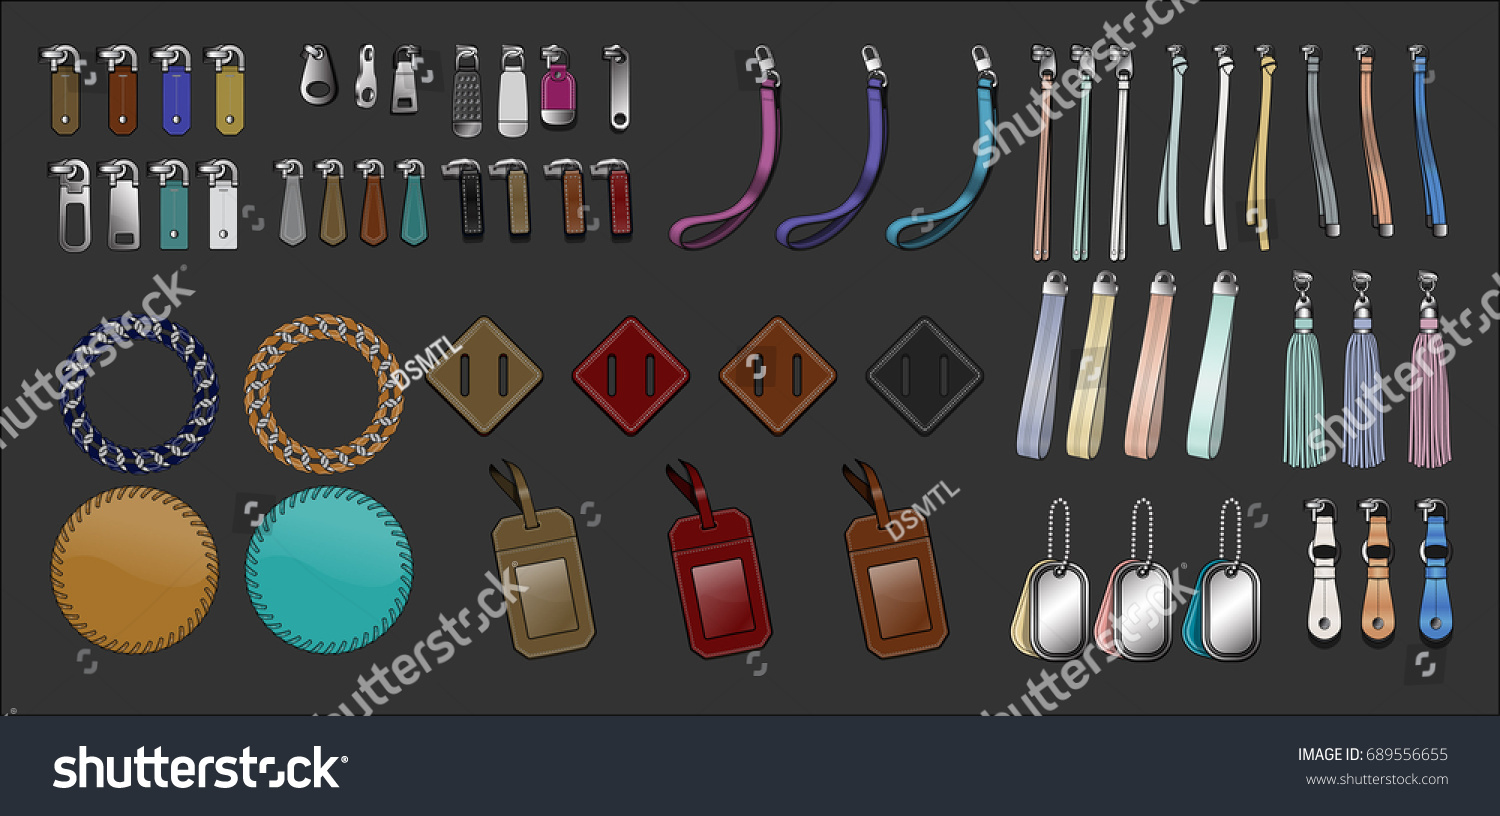 SVG of Zipper pulls handbag accessories illustration svg